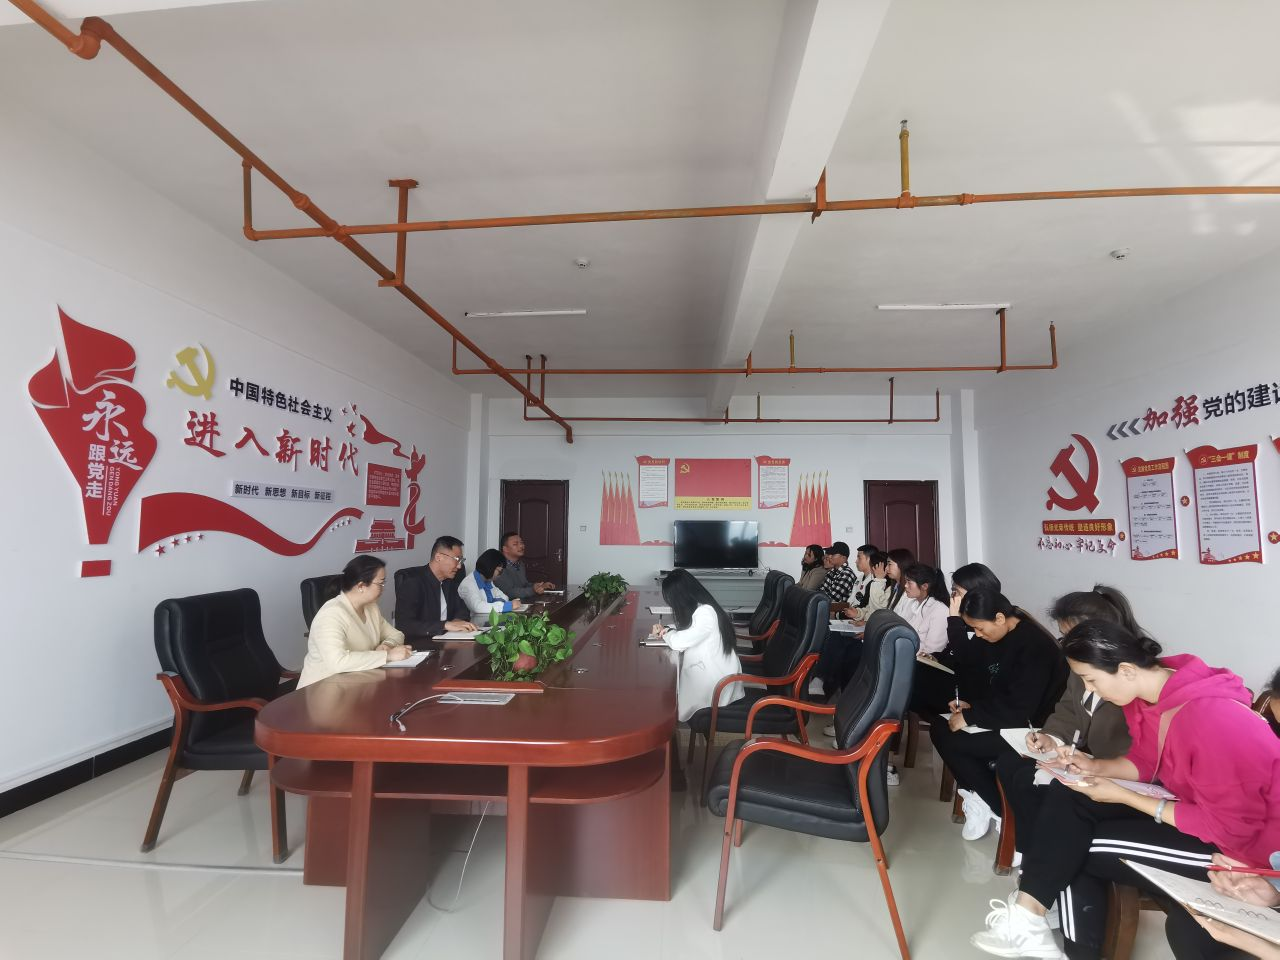 人事處組織召開 關于張力瑩同志任命的會議